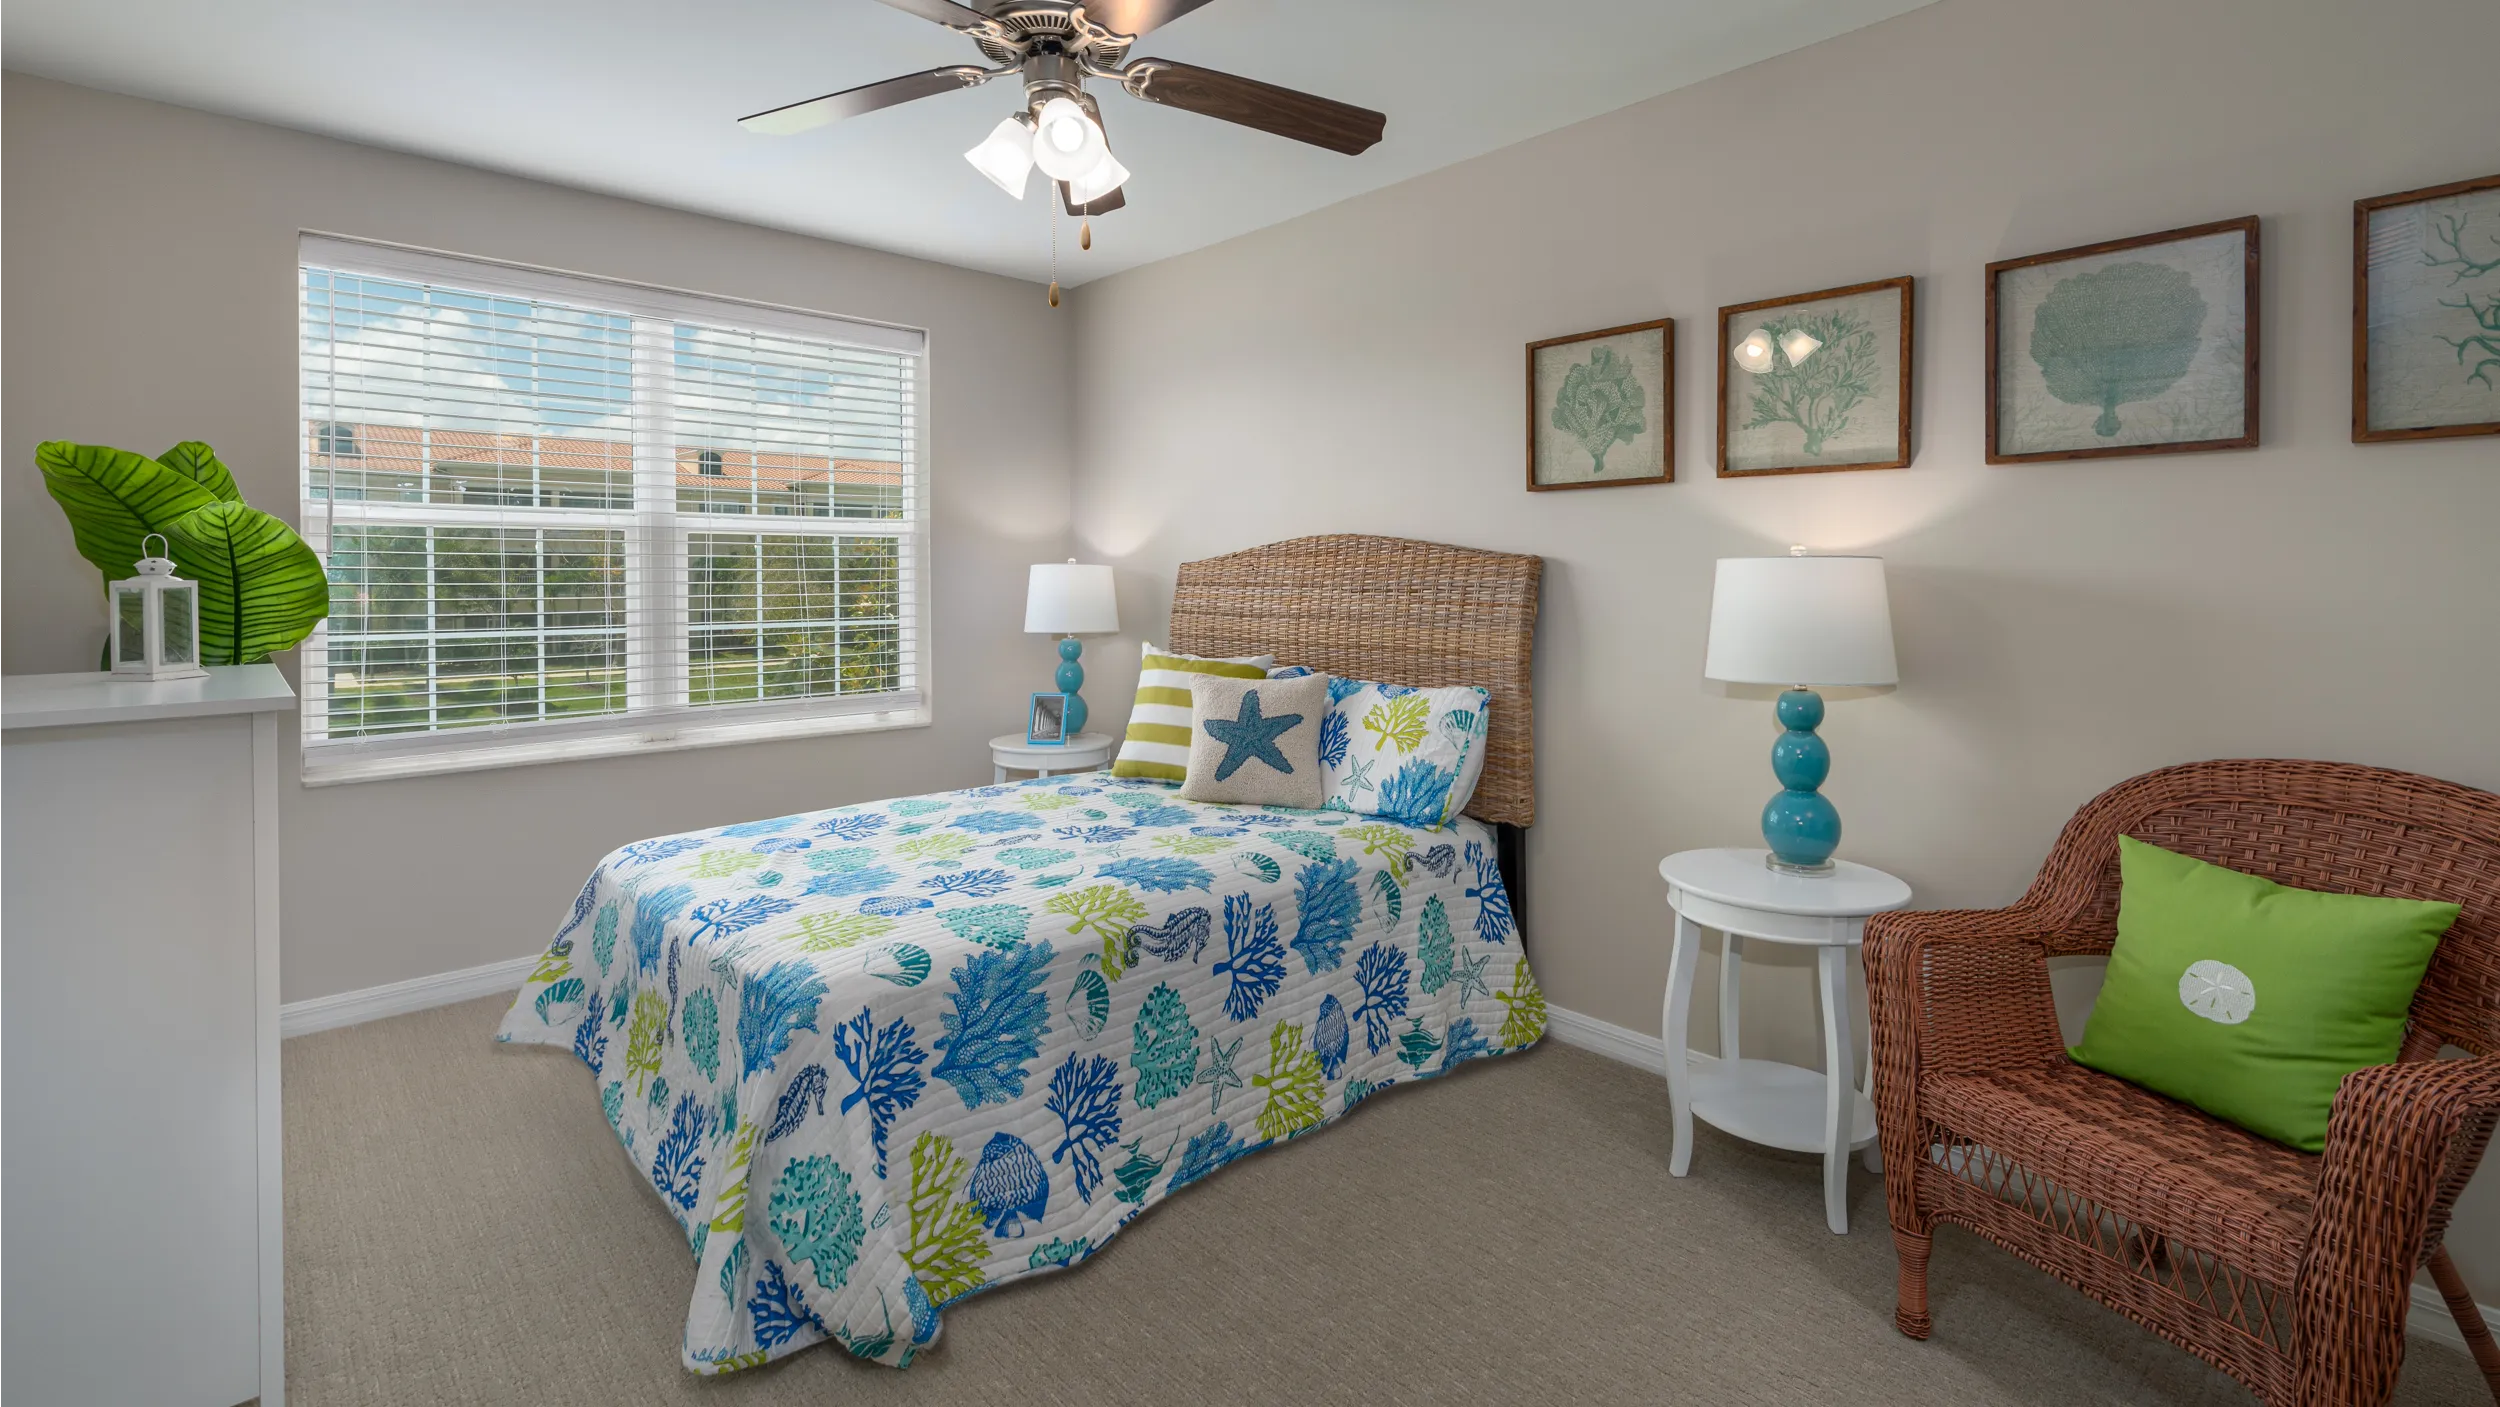 Model bedroom in memory care home in bonita springs, FL